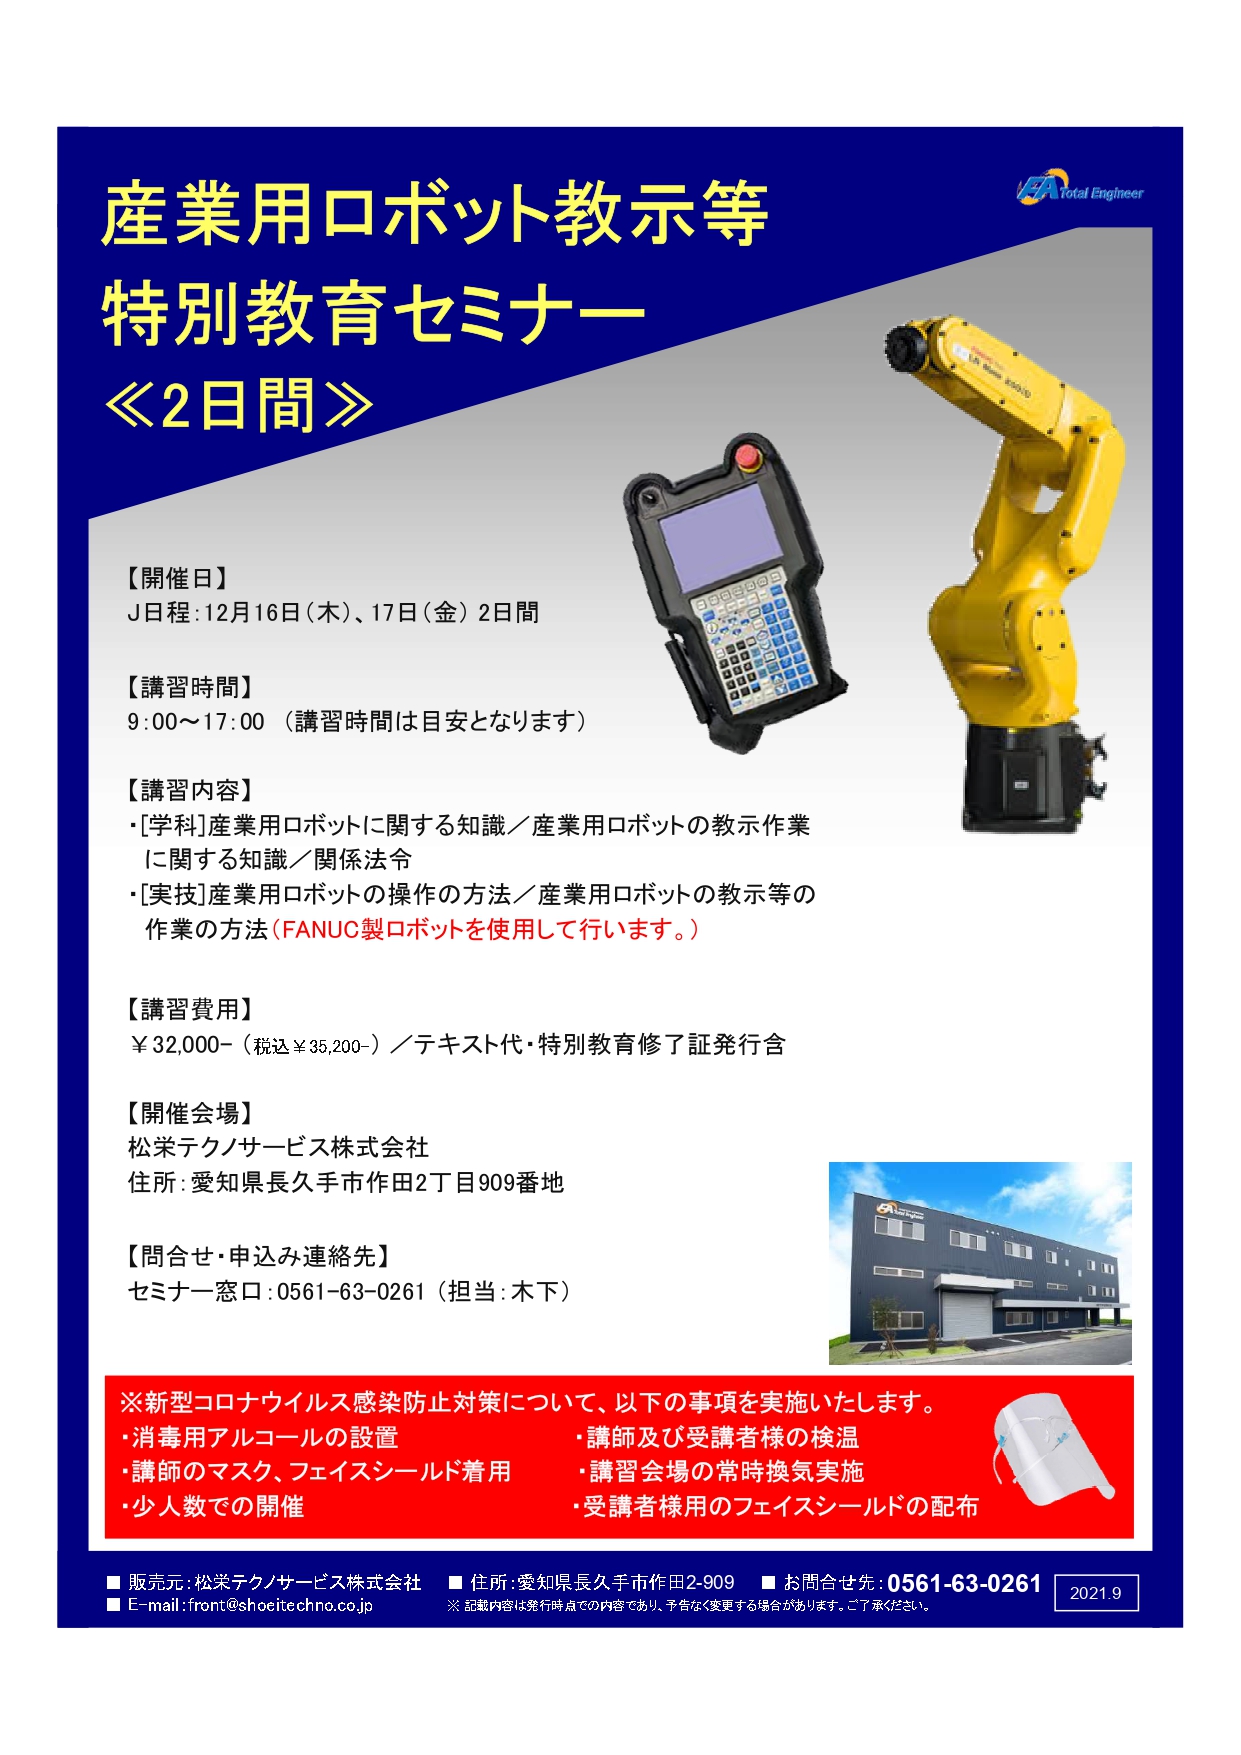 【終了しました】産業用ロボット特別教育（教示等）愛知会場開催のお知らせ【2021年12月】